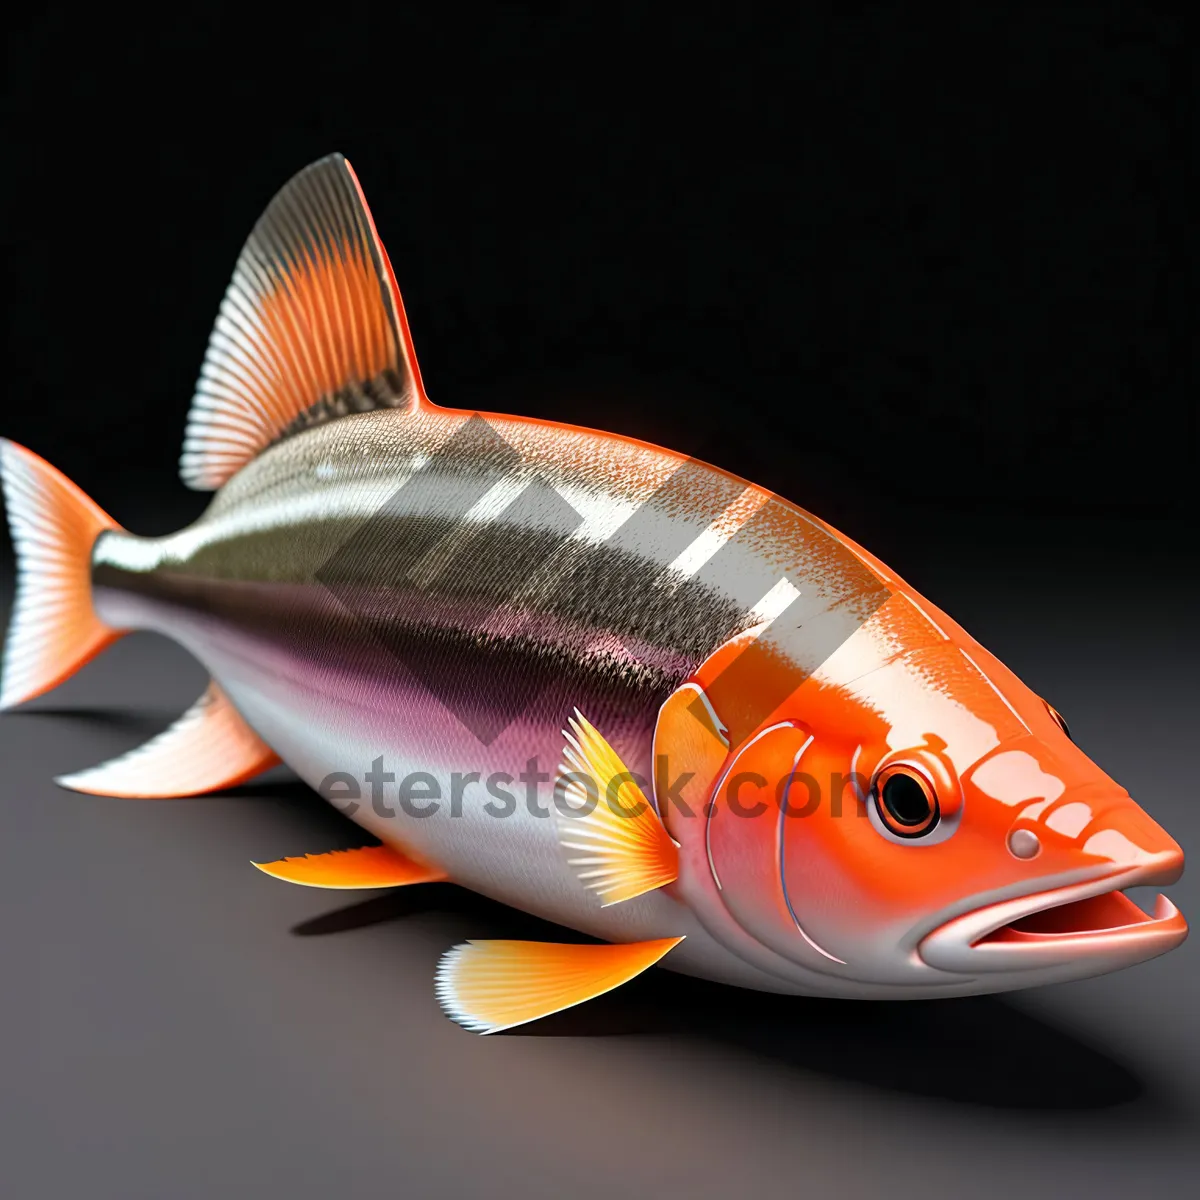 Picture of Goldfish swimming in aquarium bowl